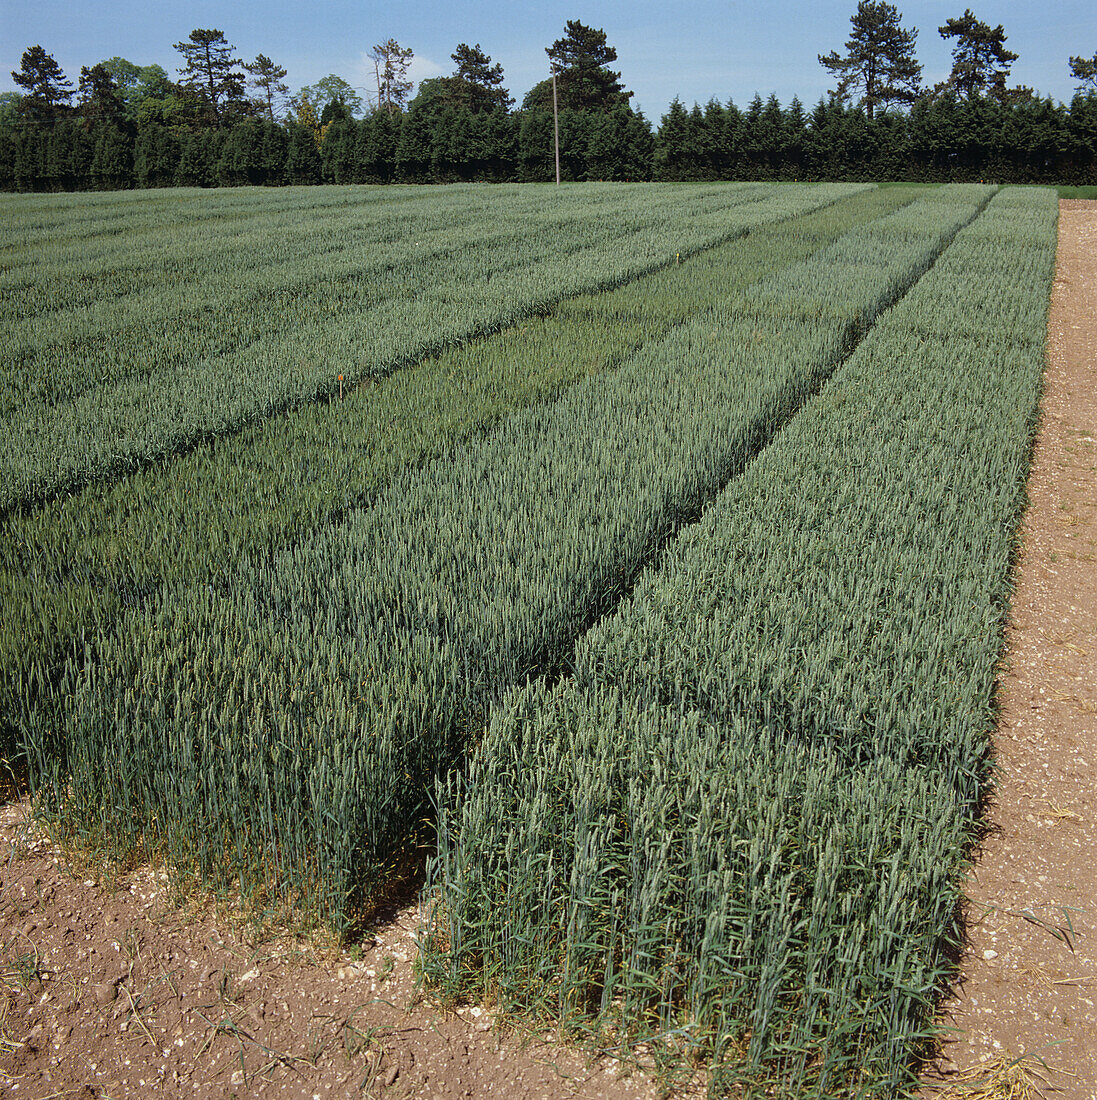 Wheat field trial plots